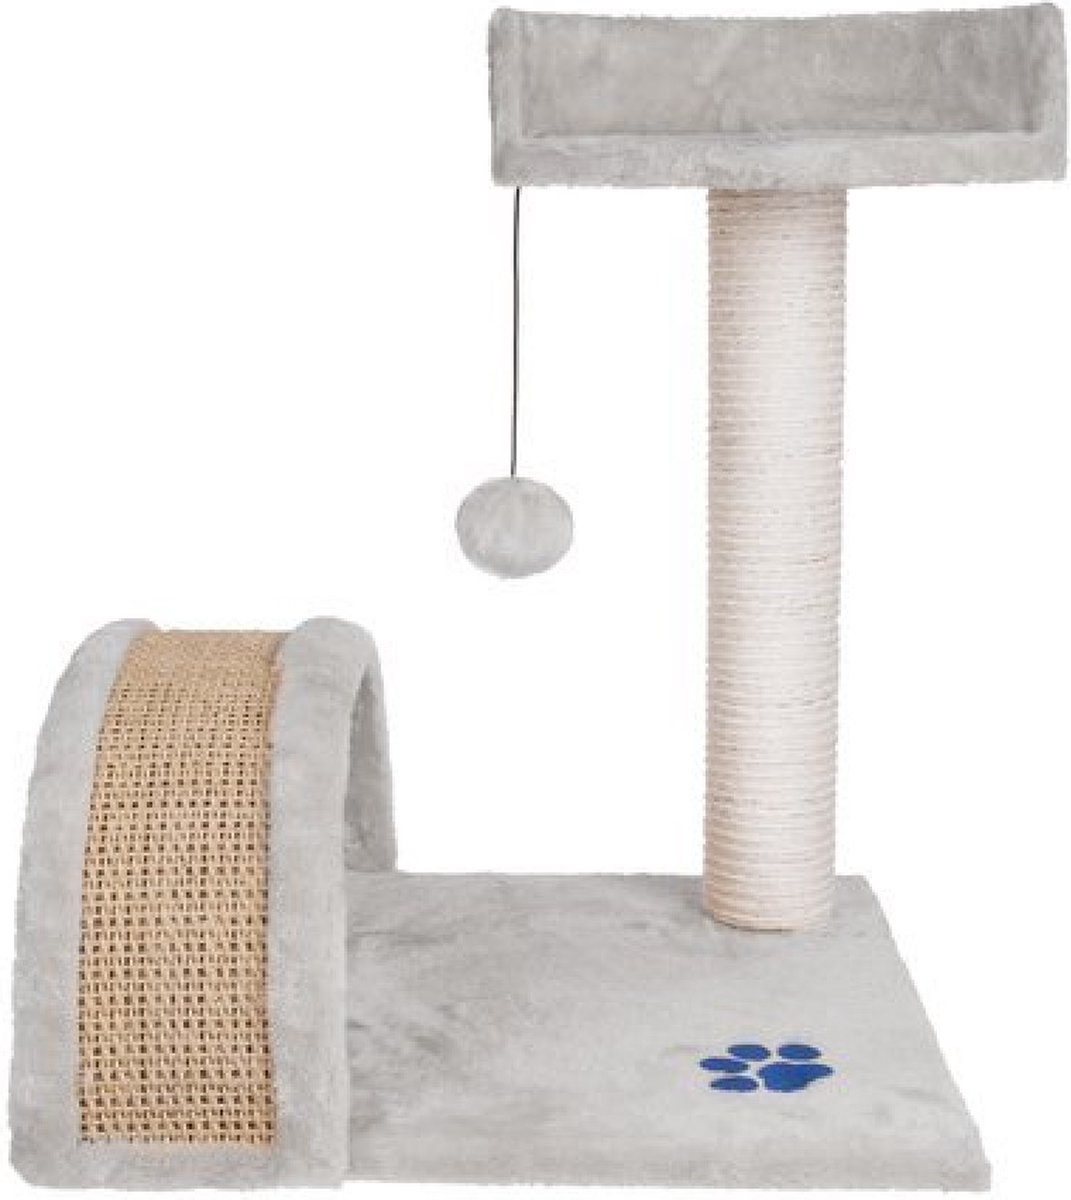 Katten krabpaal 50 cm - 1 etage - zacht velours - urenlang speelplezier - kattenhuisje - 1 platform - kado tip